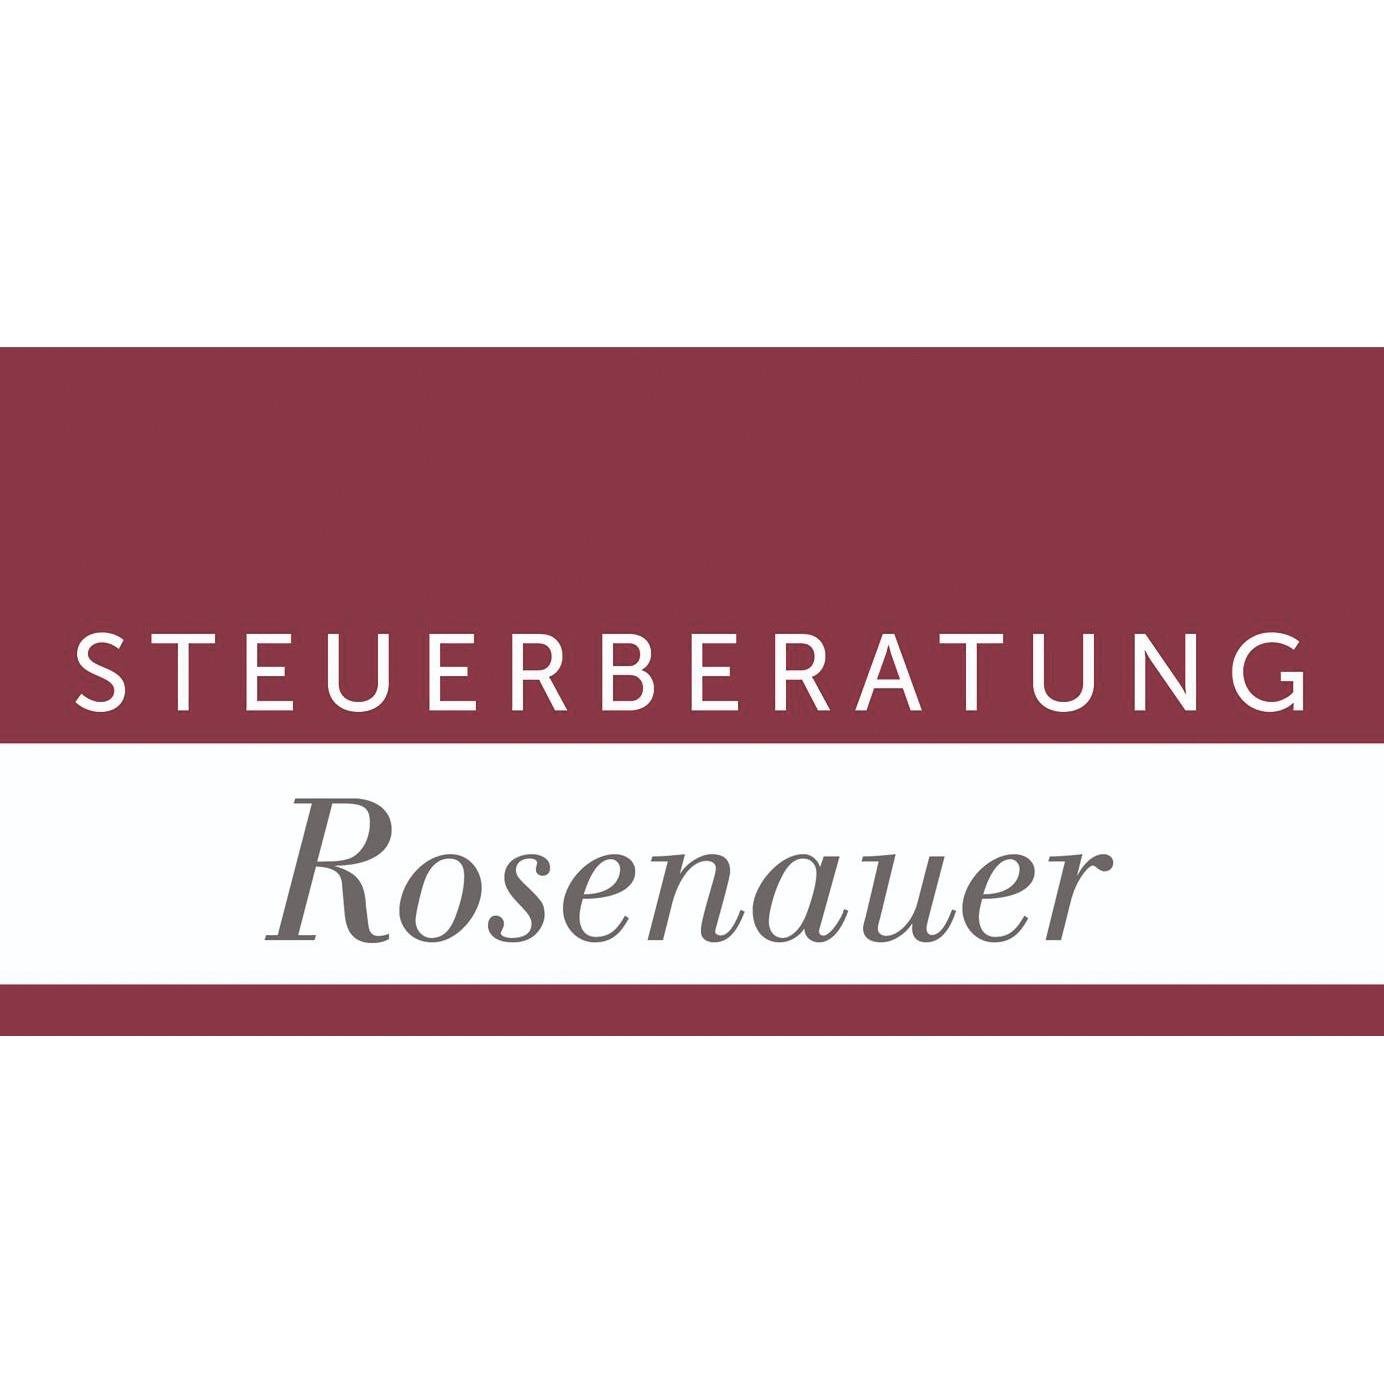 Rosenauer österreichische & deutsche Steuerberater